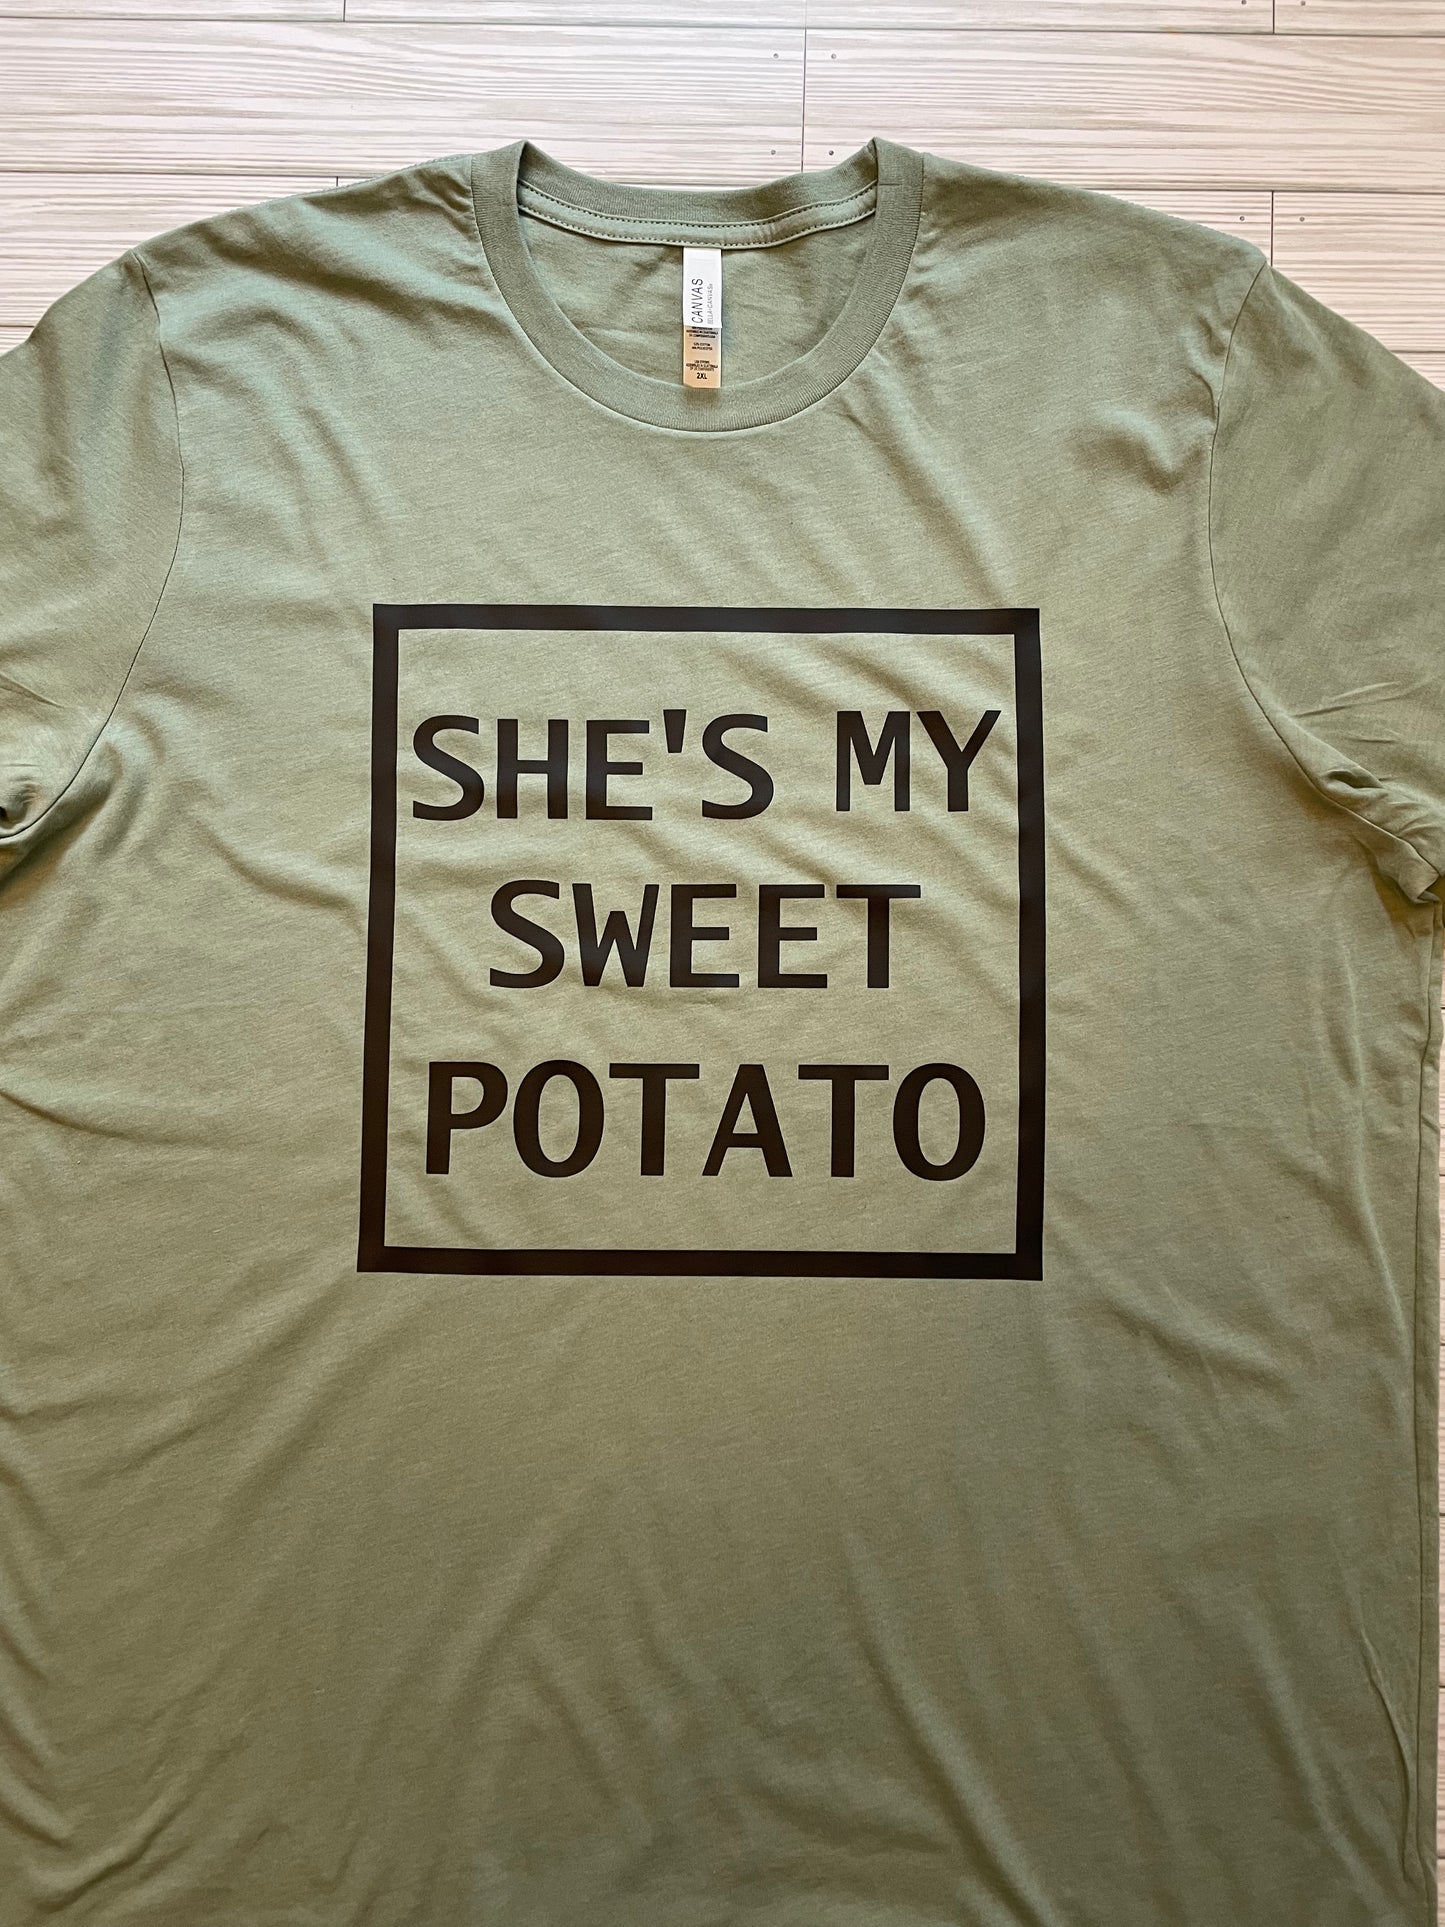 Sweet Potato and I Yam